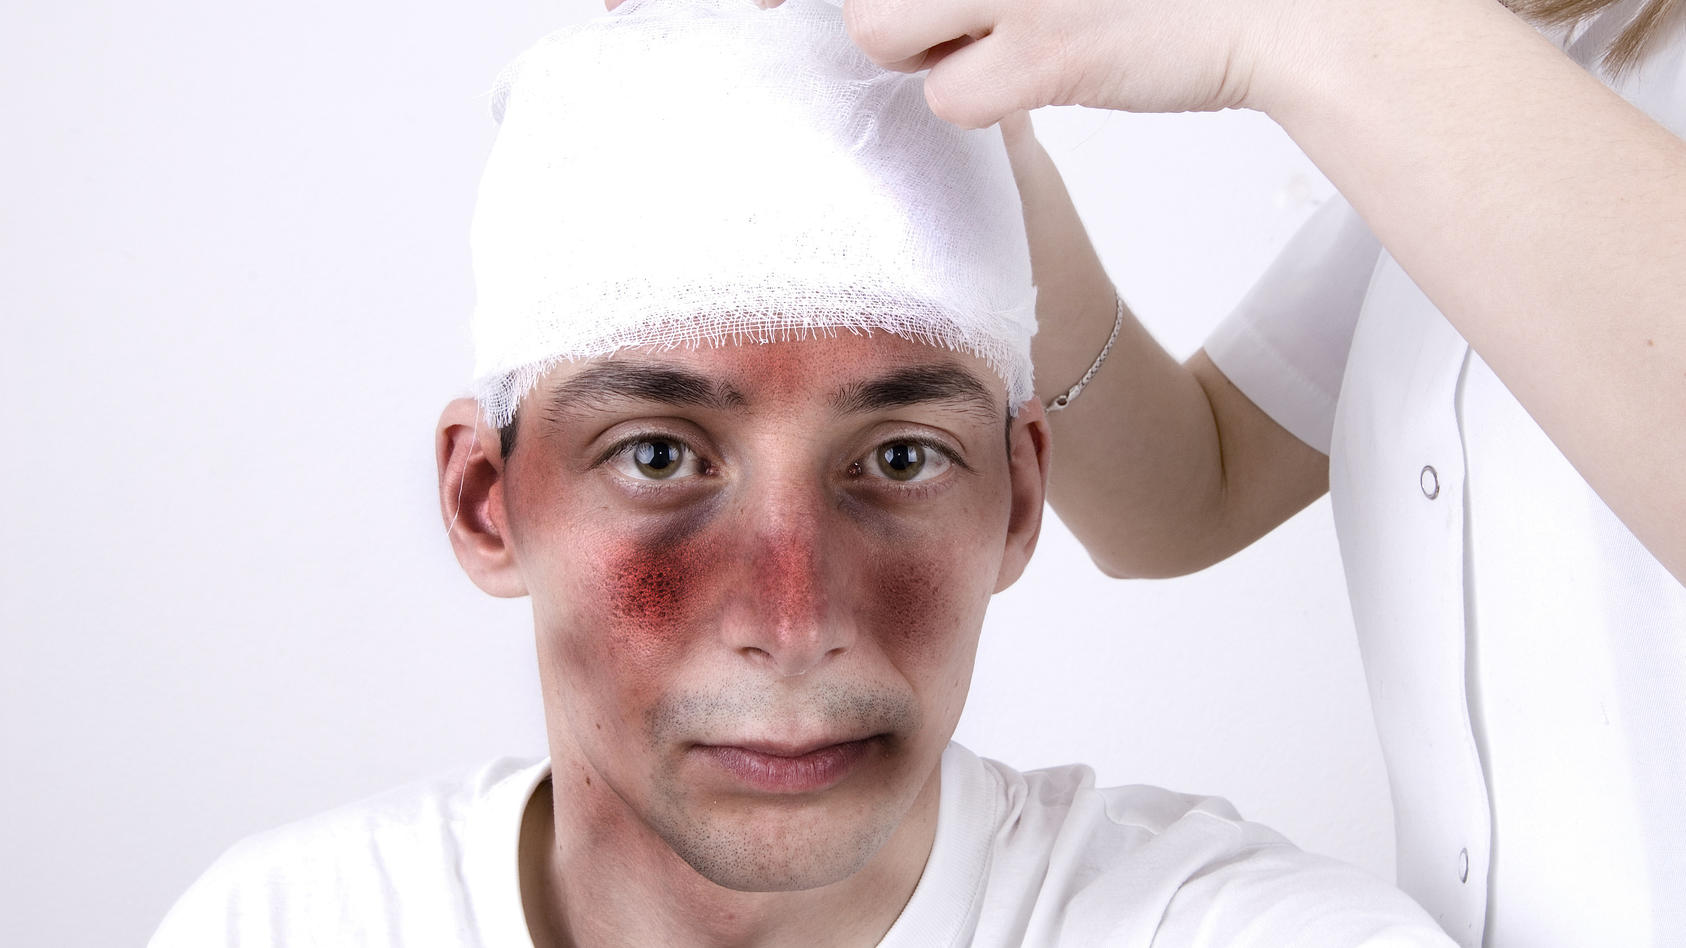 Mann mit Kopfverletzung (Schädel-Hirn-Trauma)